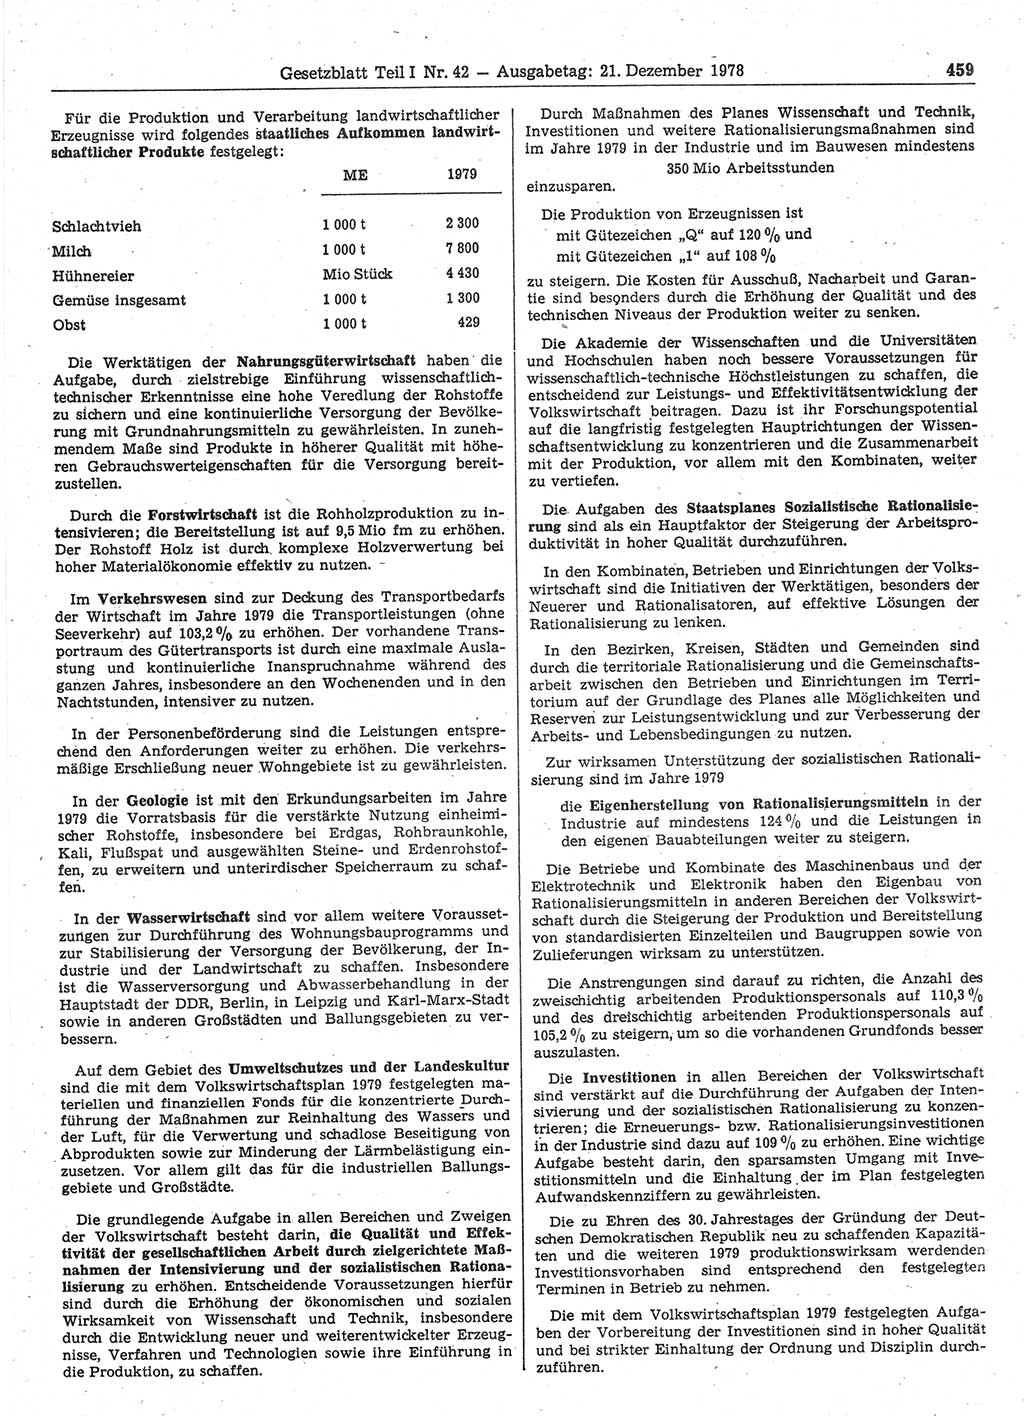 Gesetzblatt (GBl.) der Deutschen Demokratischen Republik (DDR) Teil Ⅰ 1978, Seite 459 (GBl. DDR Ⅰ 1978, S. 459)